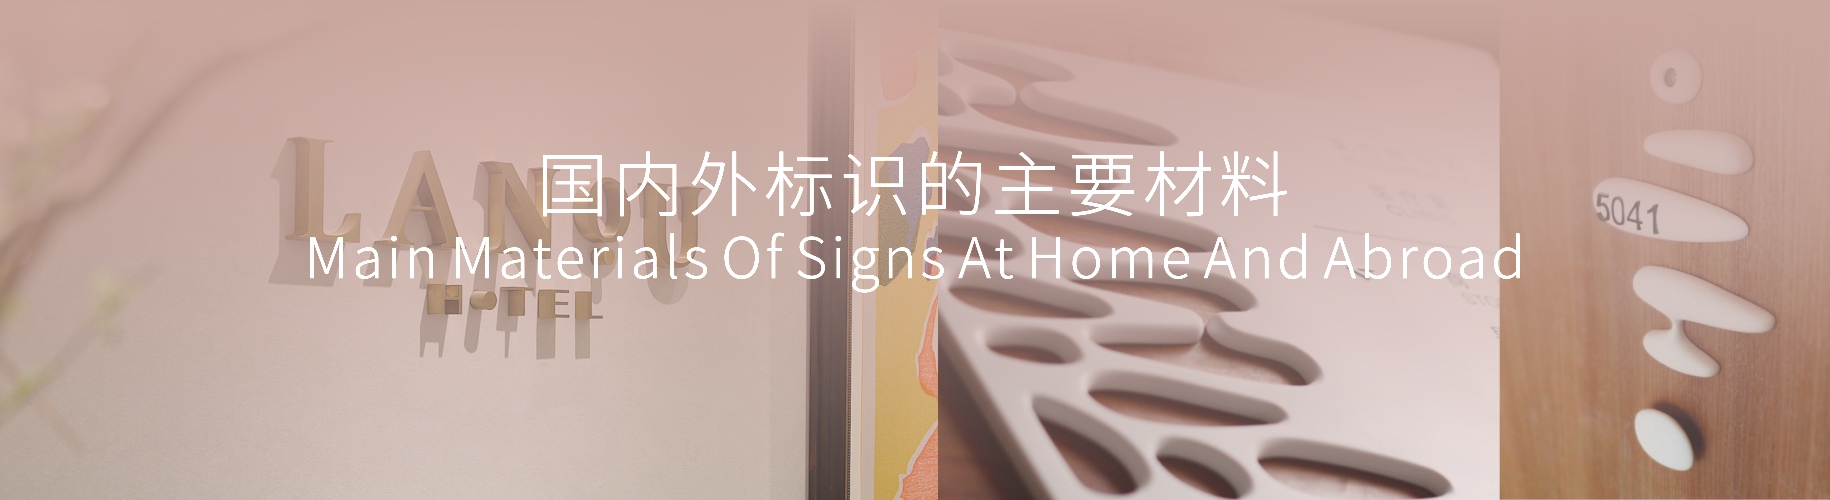 国内外标识的主要材料  Main Materials Of Signs At Home And Abroad